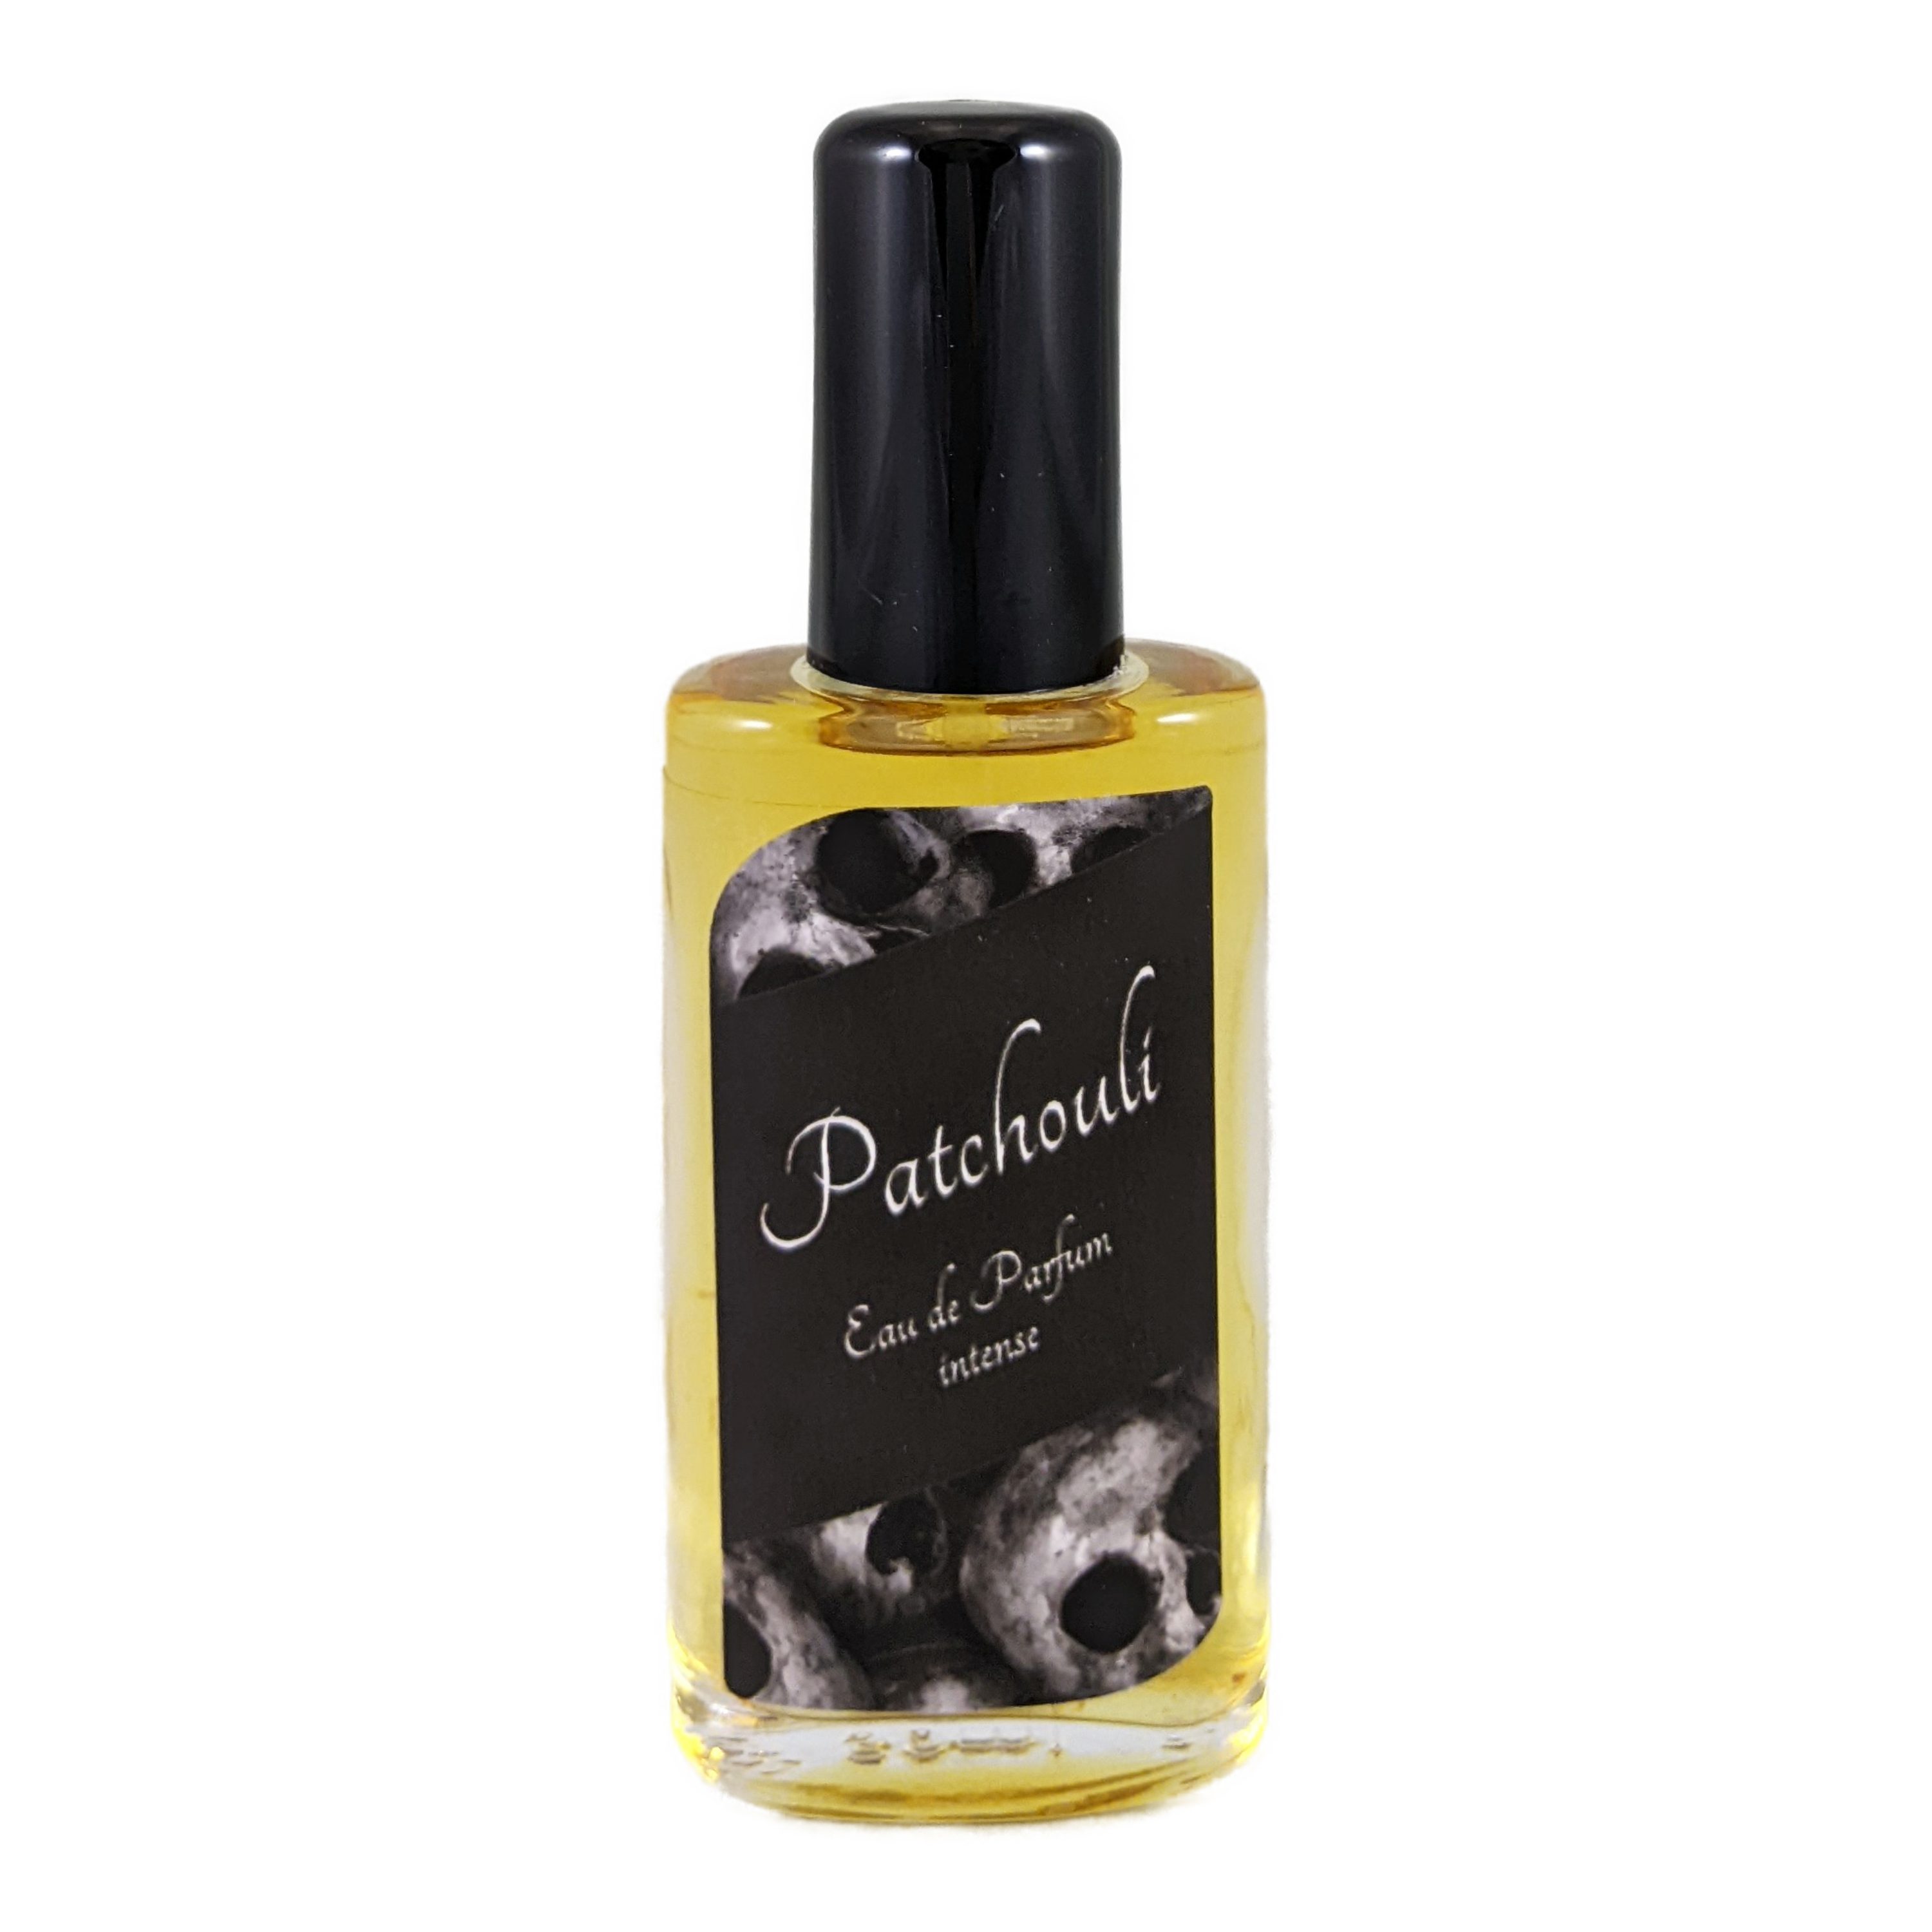 ≈petra Eau de Parfum Patchouli [50mL] aus der ≈petra Manufaktur, mit intensivem Duft nach Patchouli